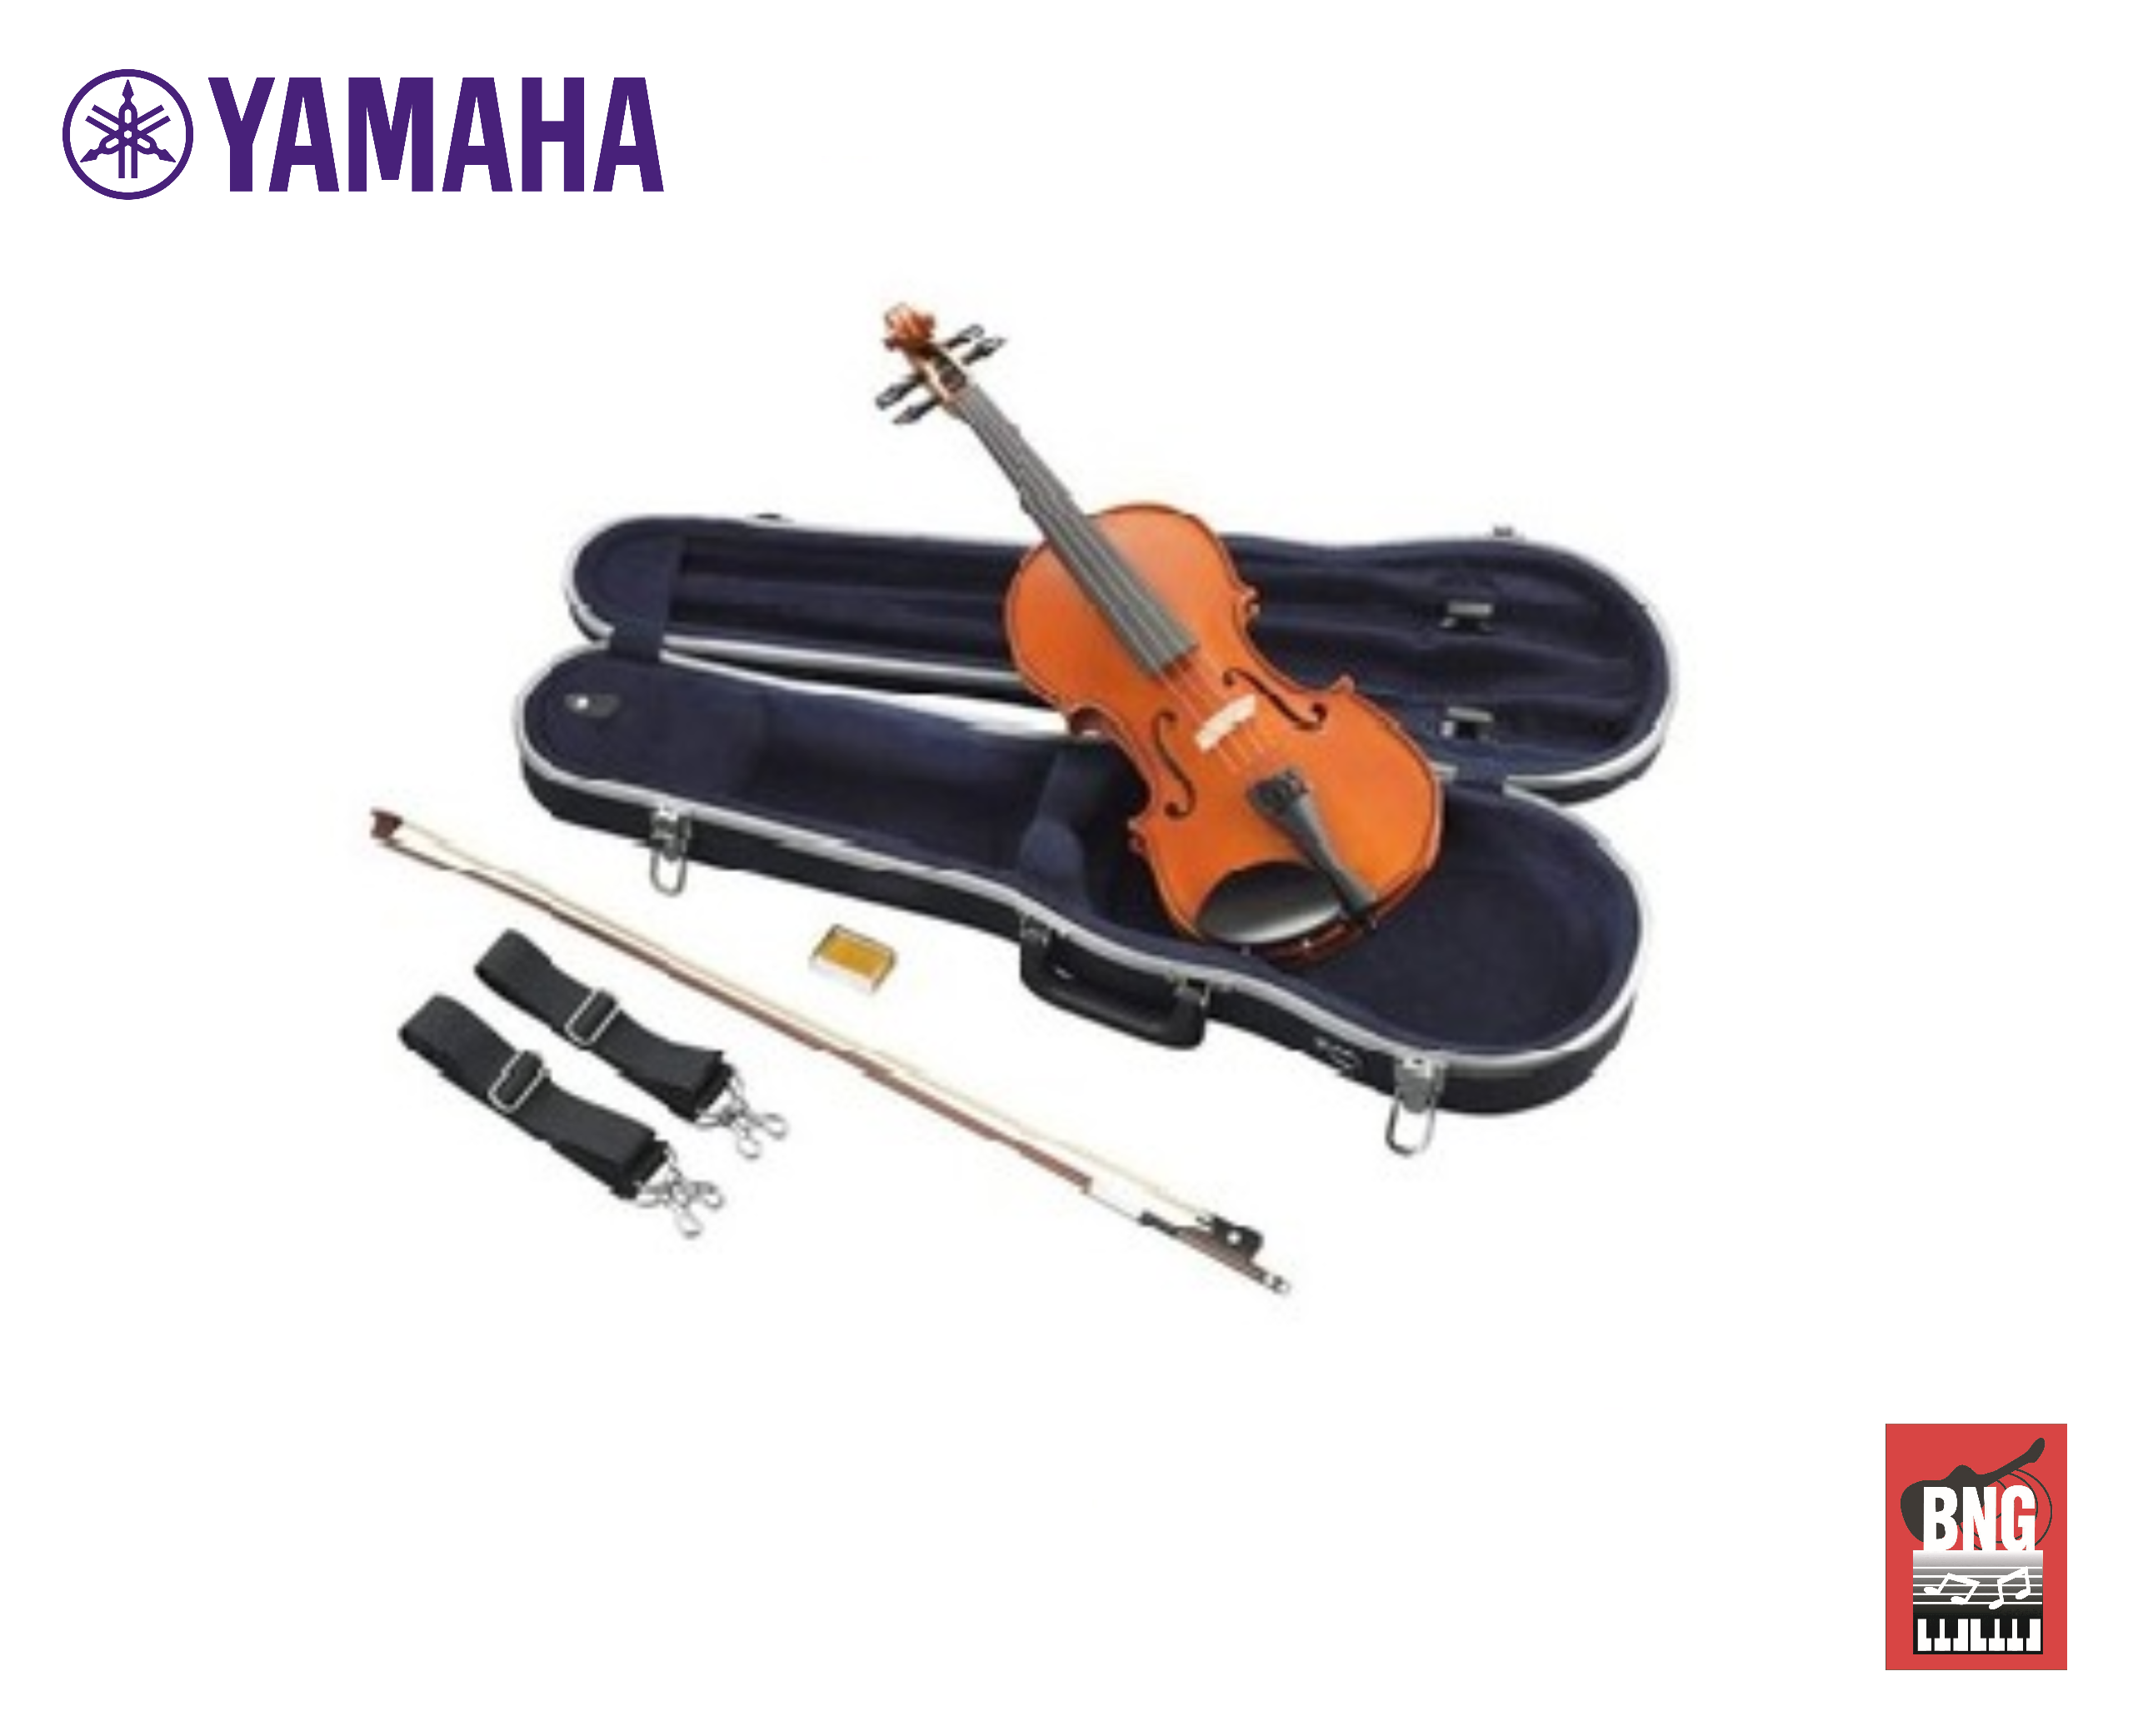 Synwin SV1005 ไวโอลิน Violin แบรนด์ในเครื่อยามาฮ่า จากประเทศสิงคโปร ขนาด 1/2 มาราฐาน เหมาะสำหรับผู้เริ่มเล่นไวโอลิน